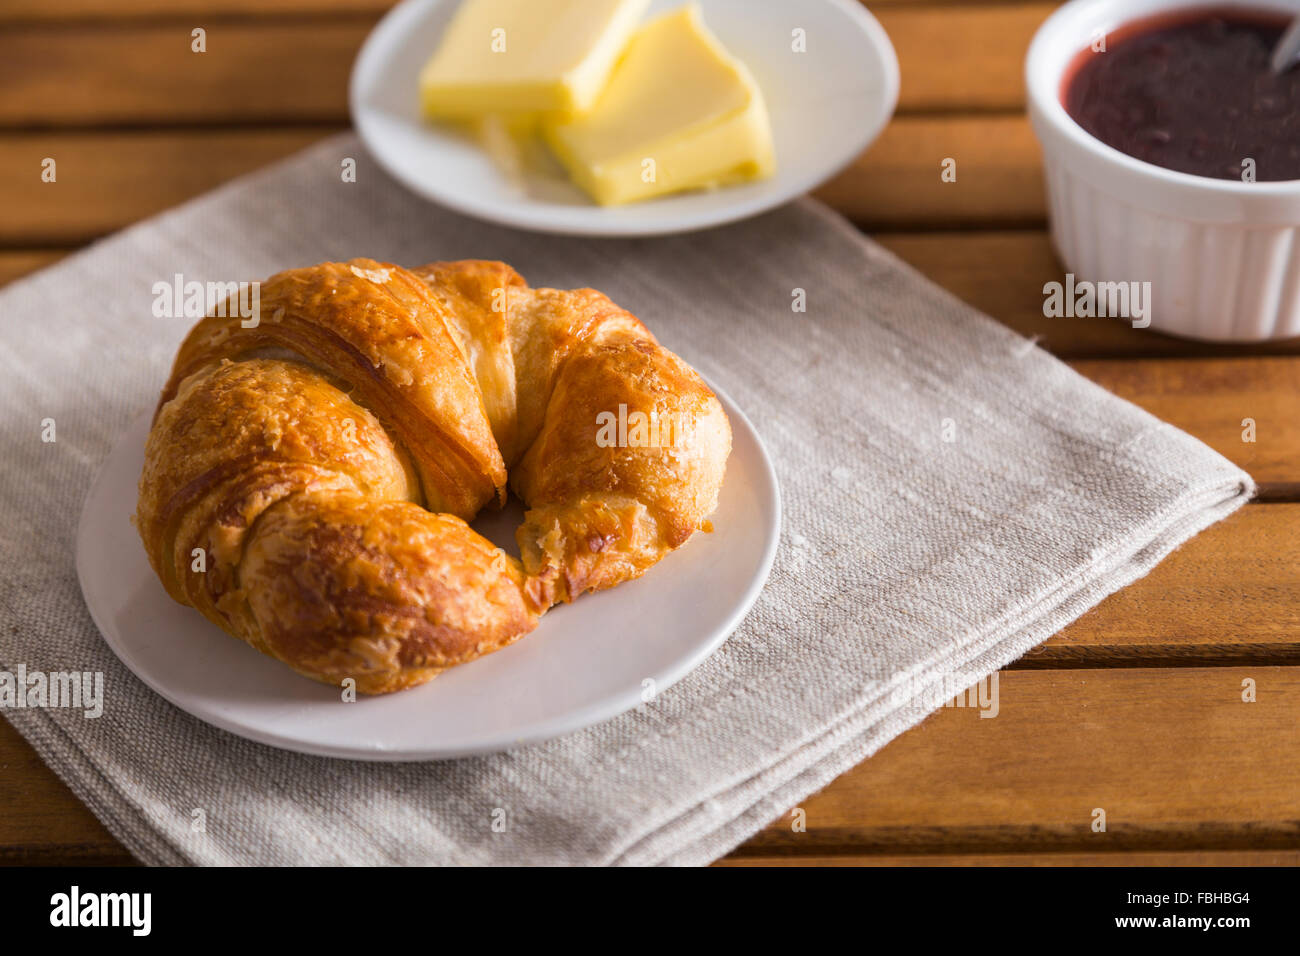 Croissant francesi prima colazione con fette di burro, un vasetto di marmellata di fragole e un tovagliolo grigio Foto Stock